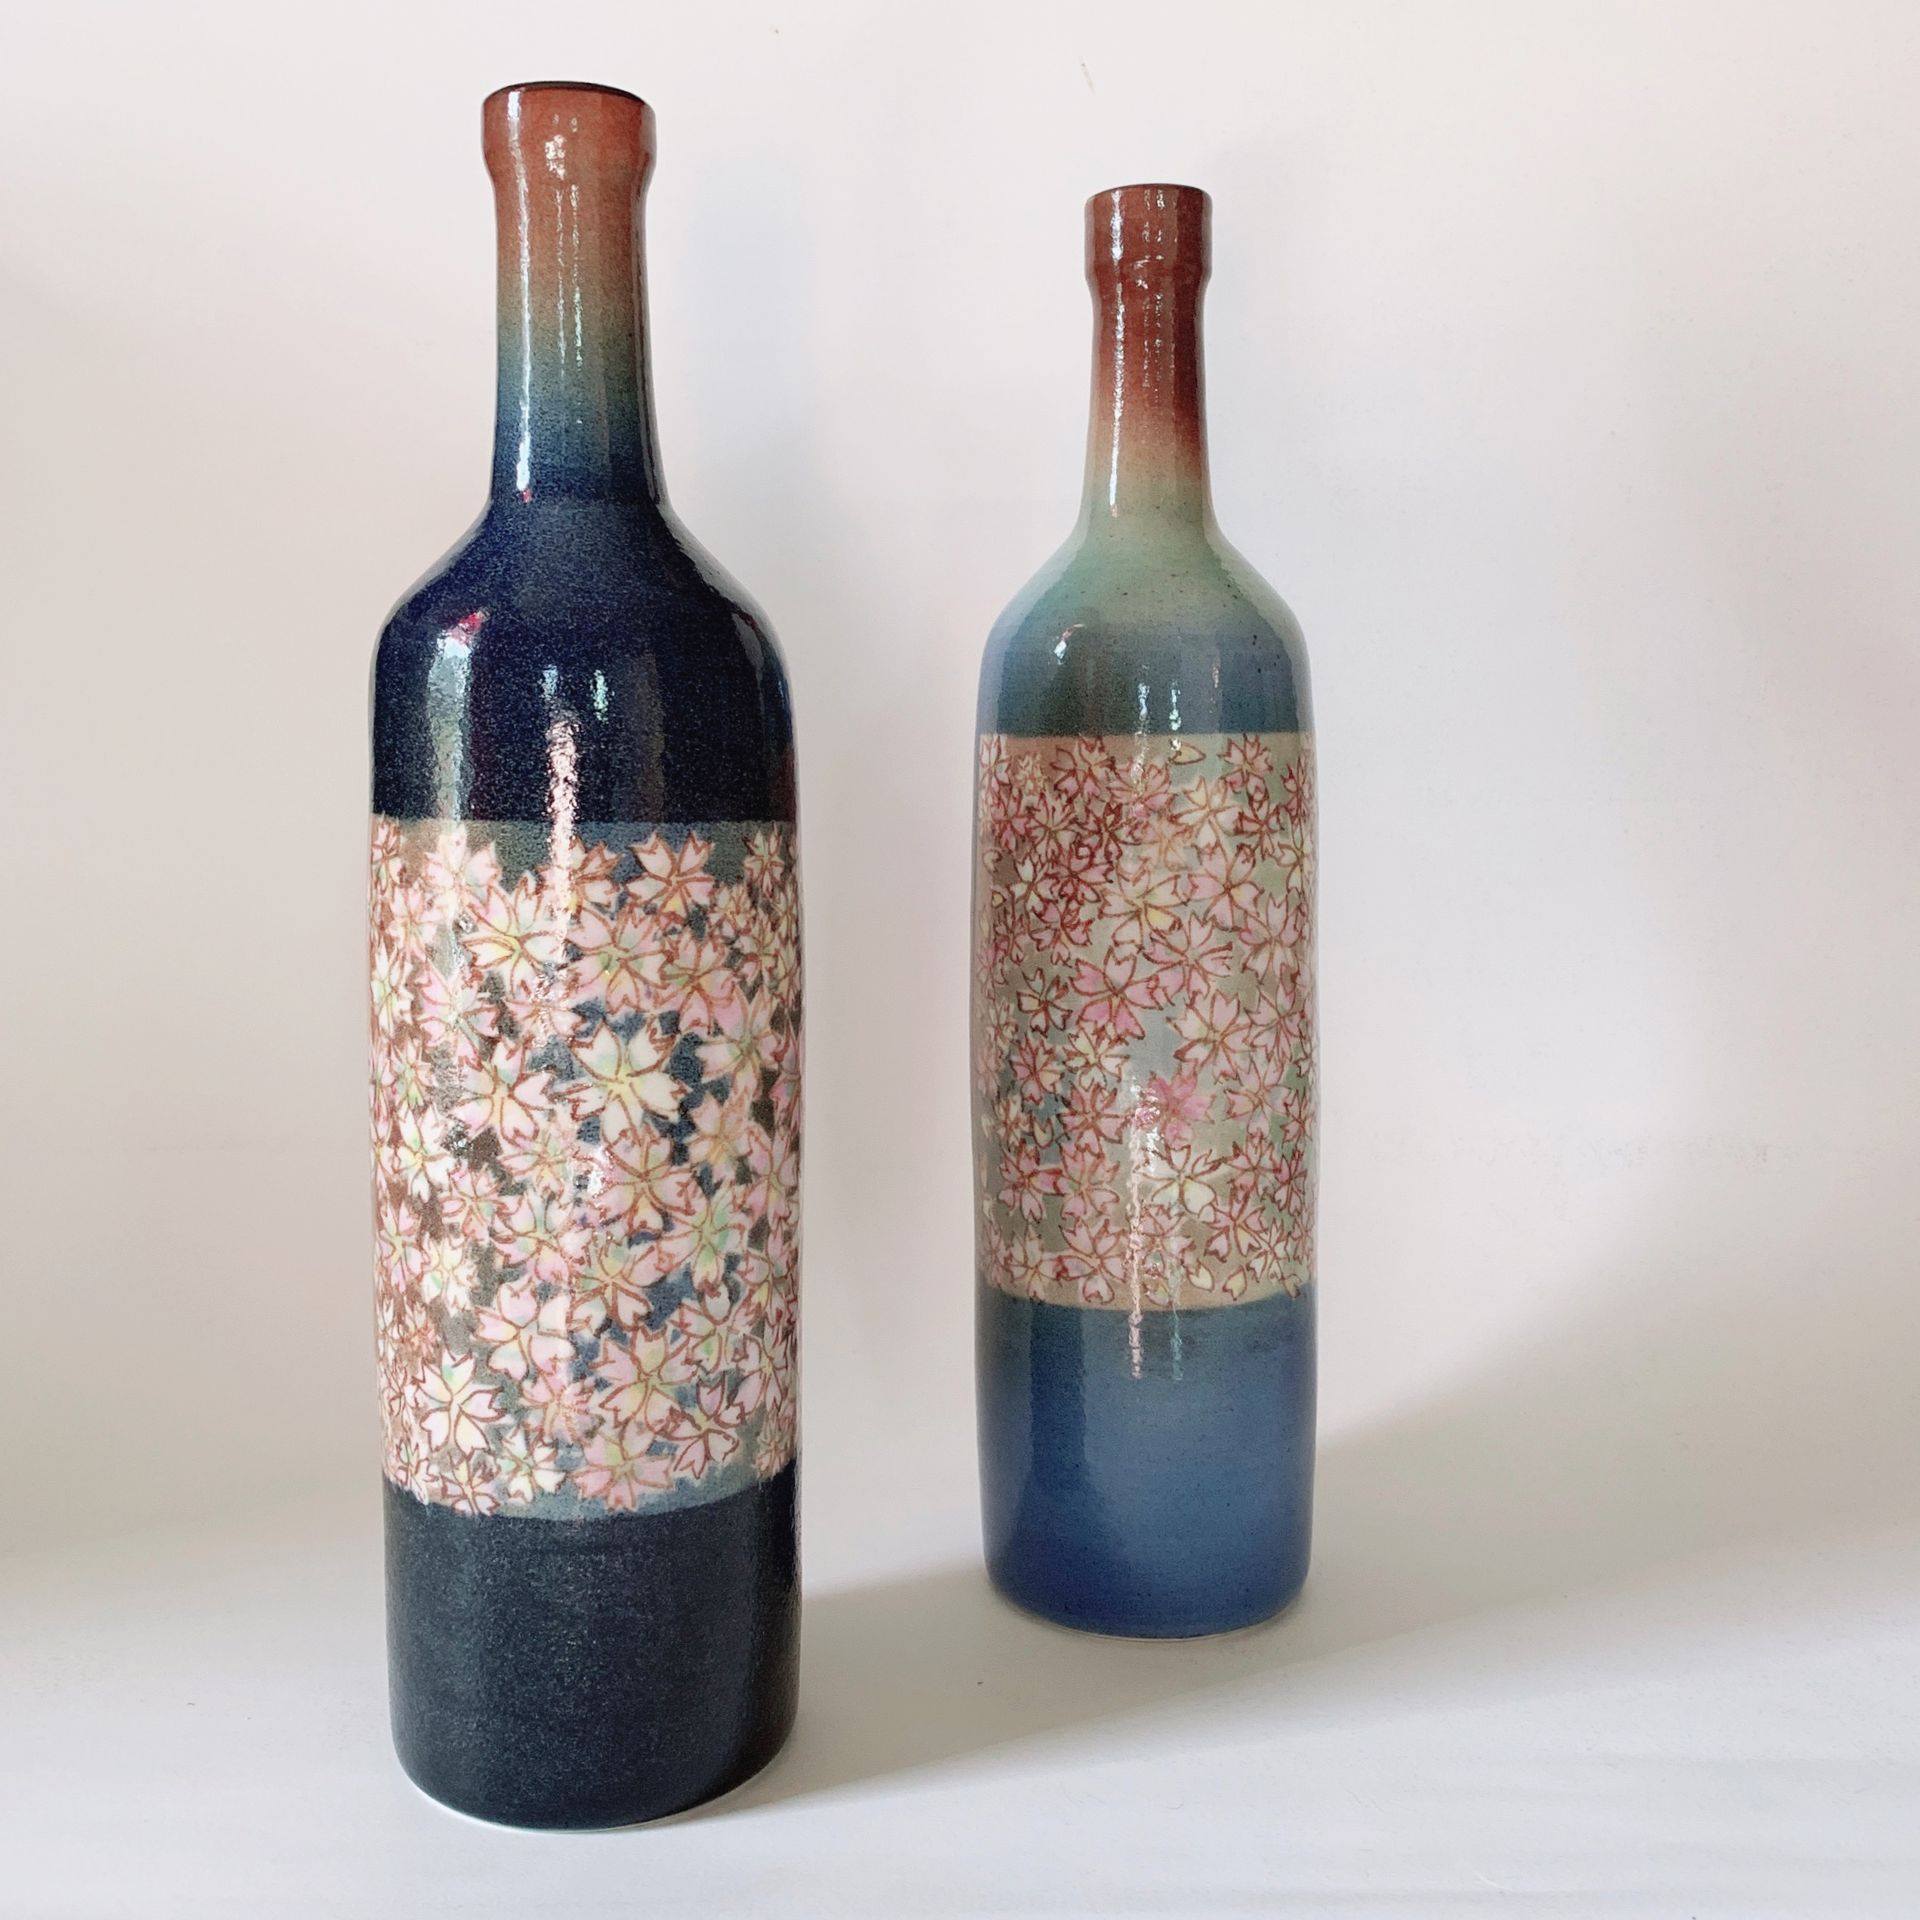 Kinichi-shigeno-bottle-vases